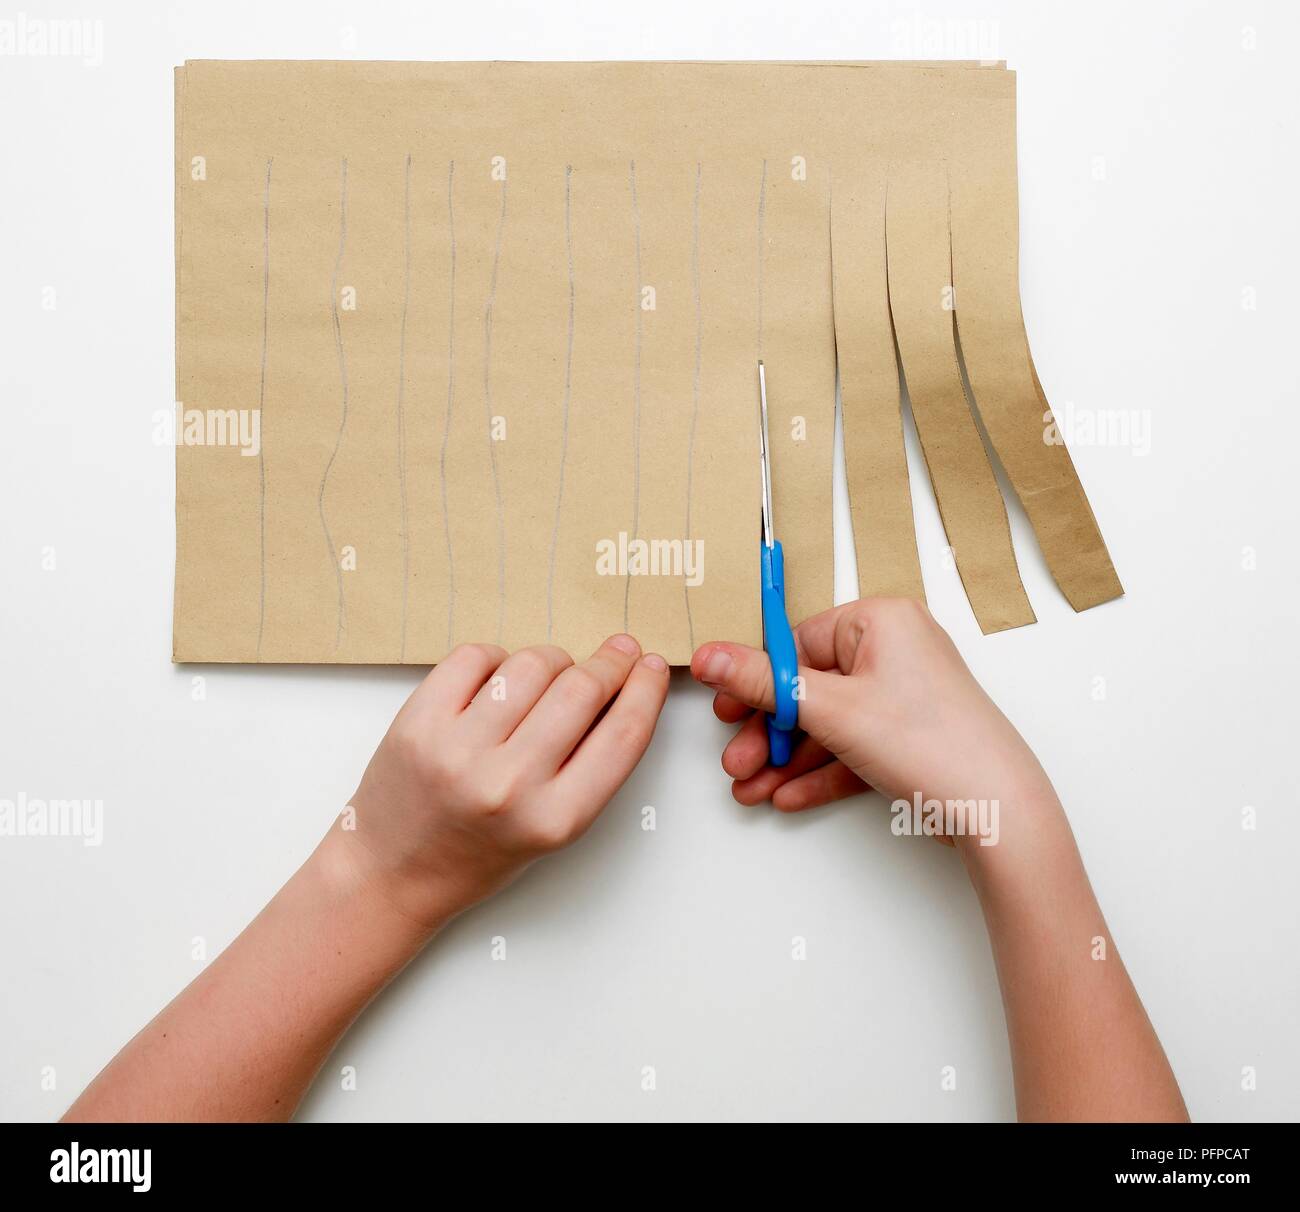 Ragazza con le mani in mano il taglio di carta marrone in strisce lungo le linee tracciate con la matita, close-up Foto Stock